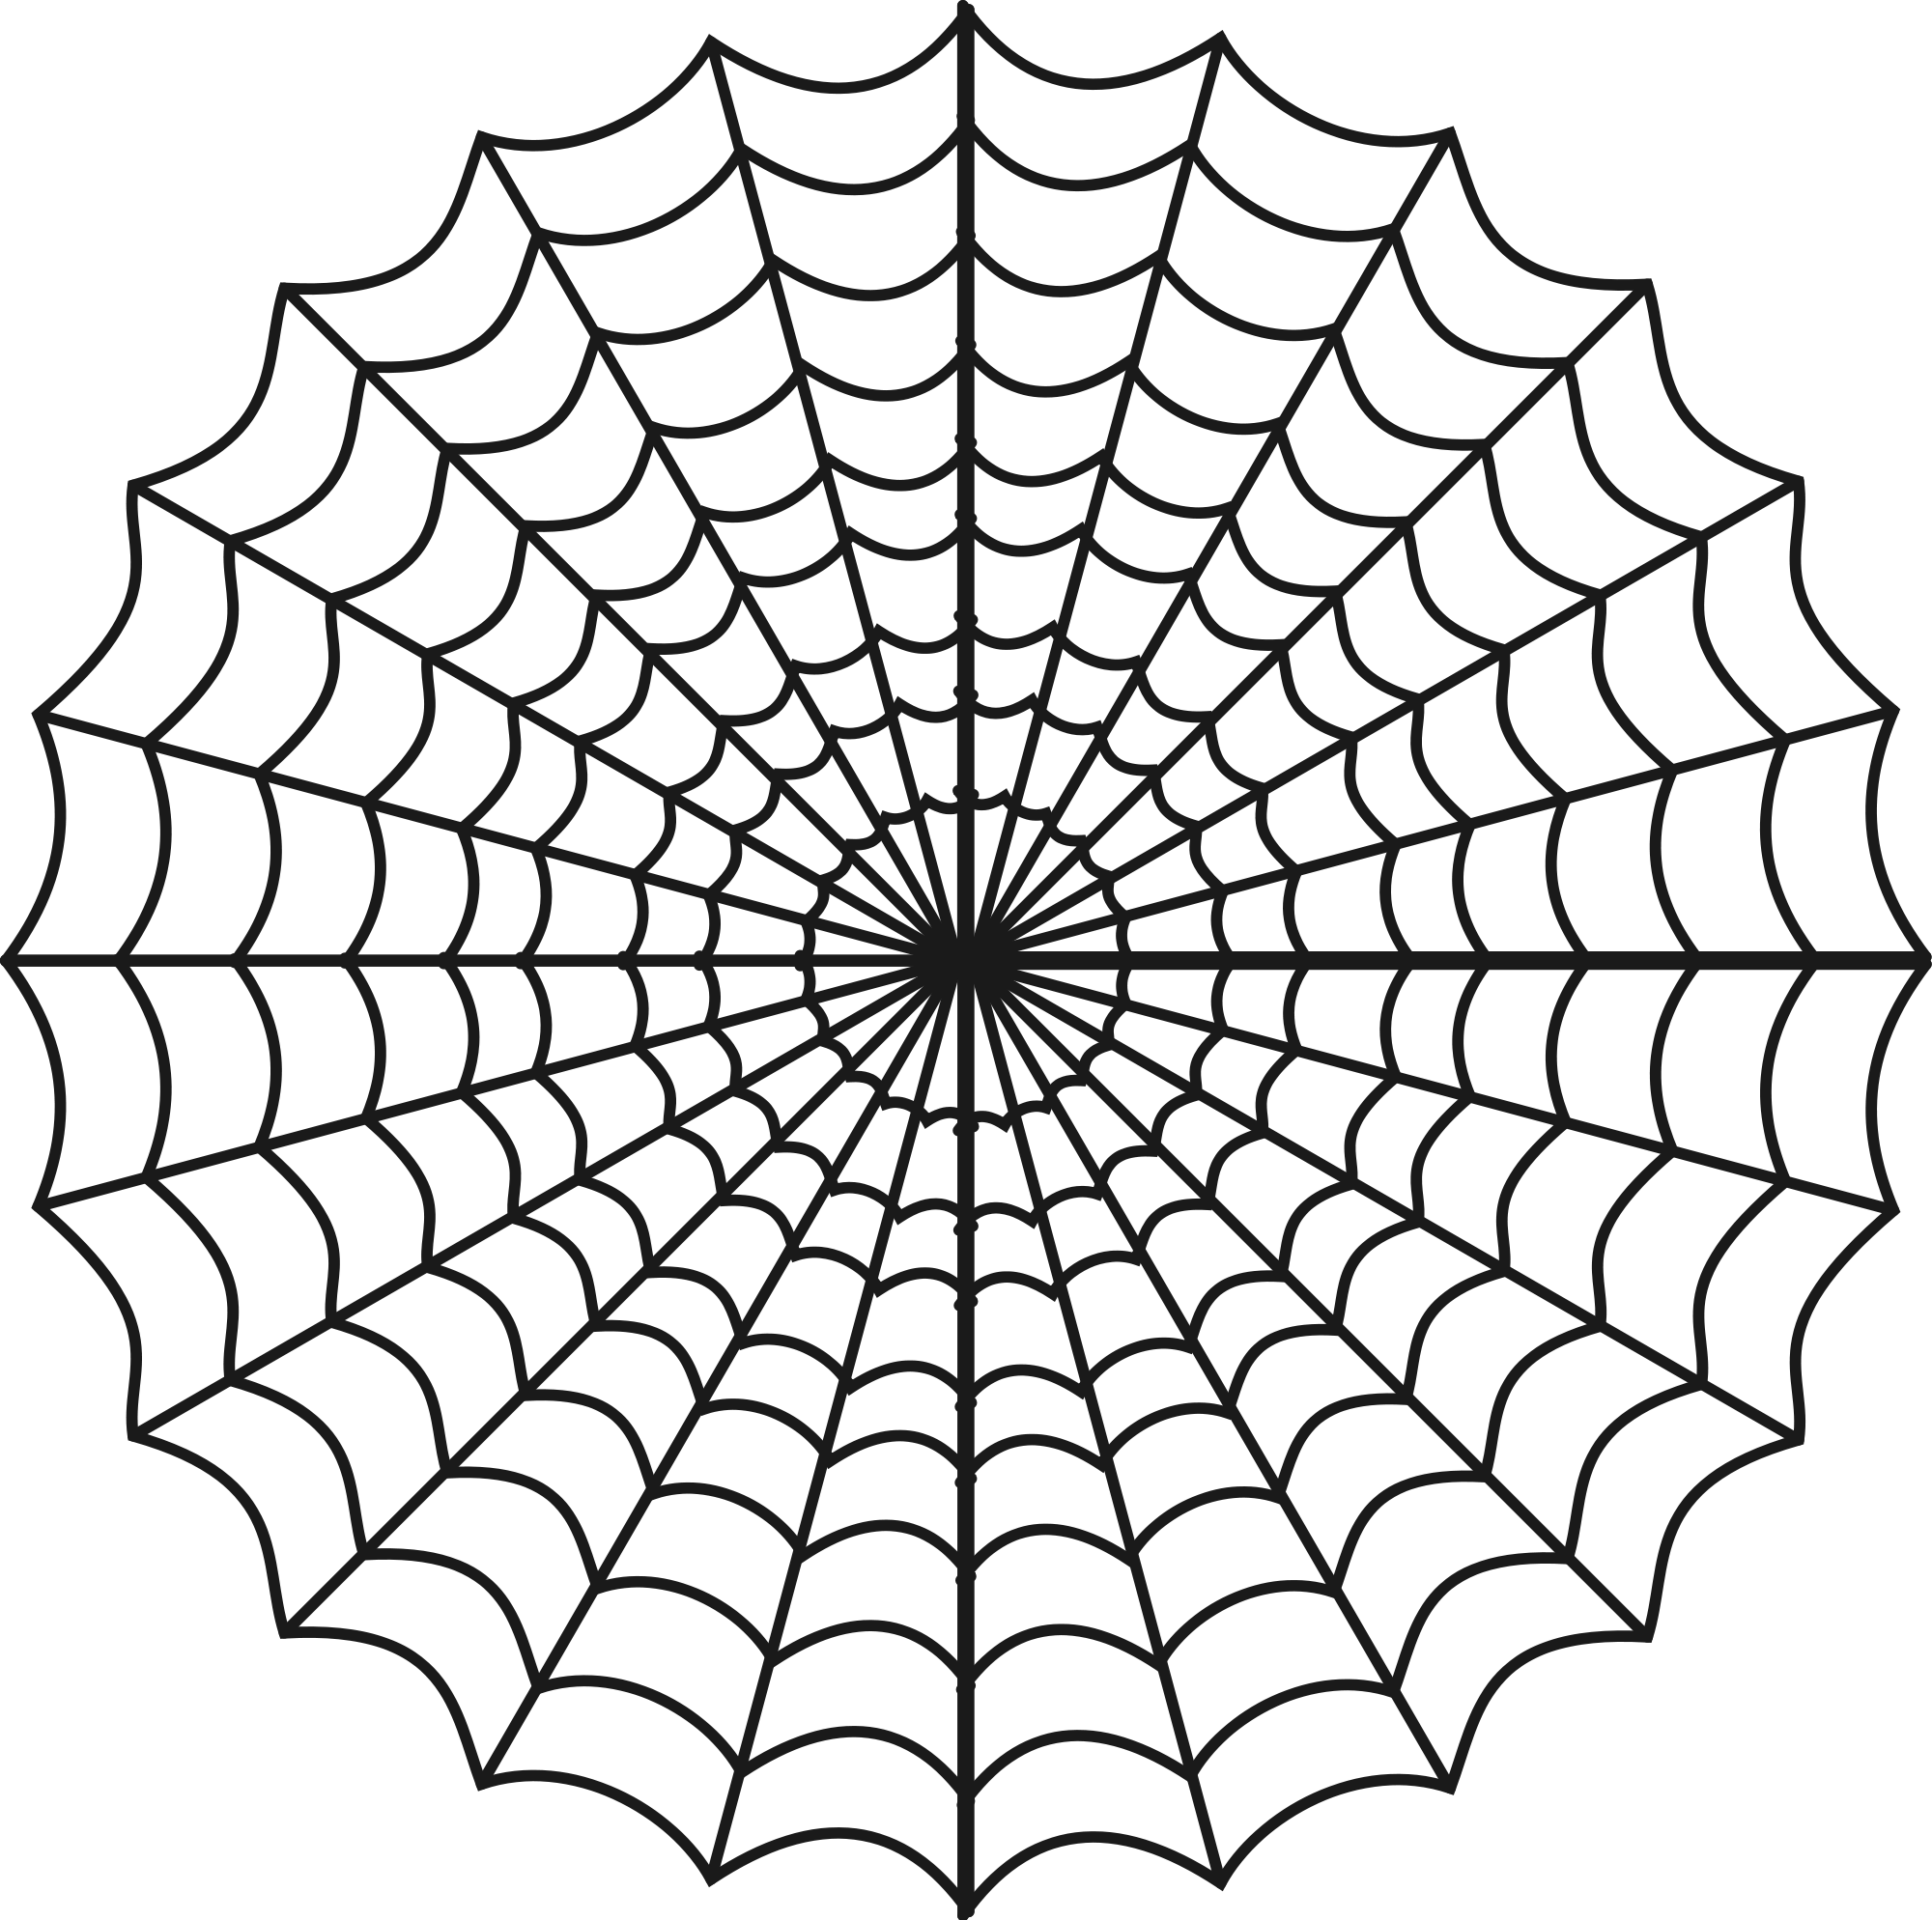 Spider spider silk